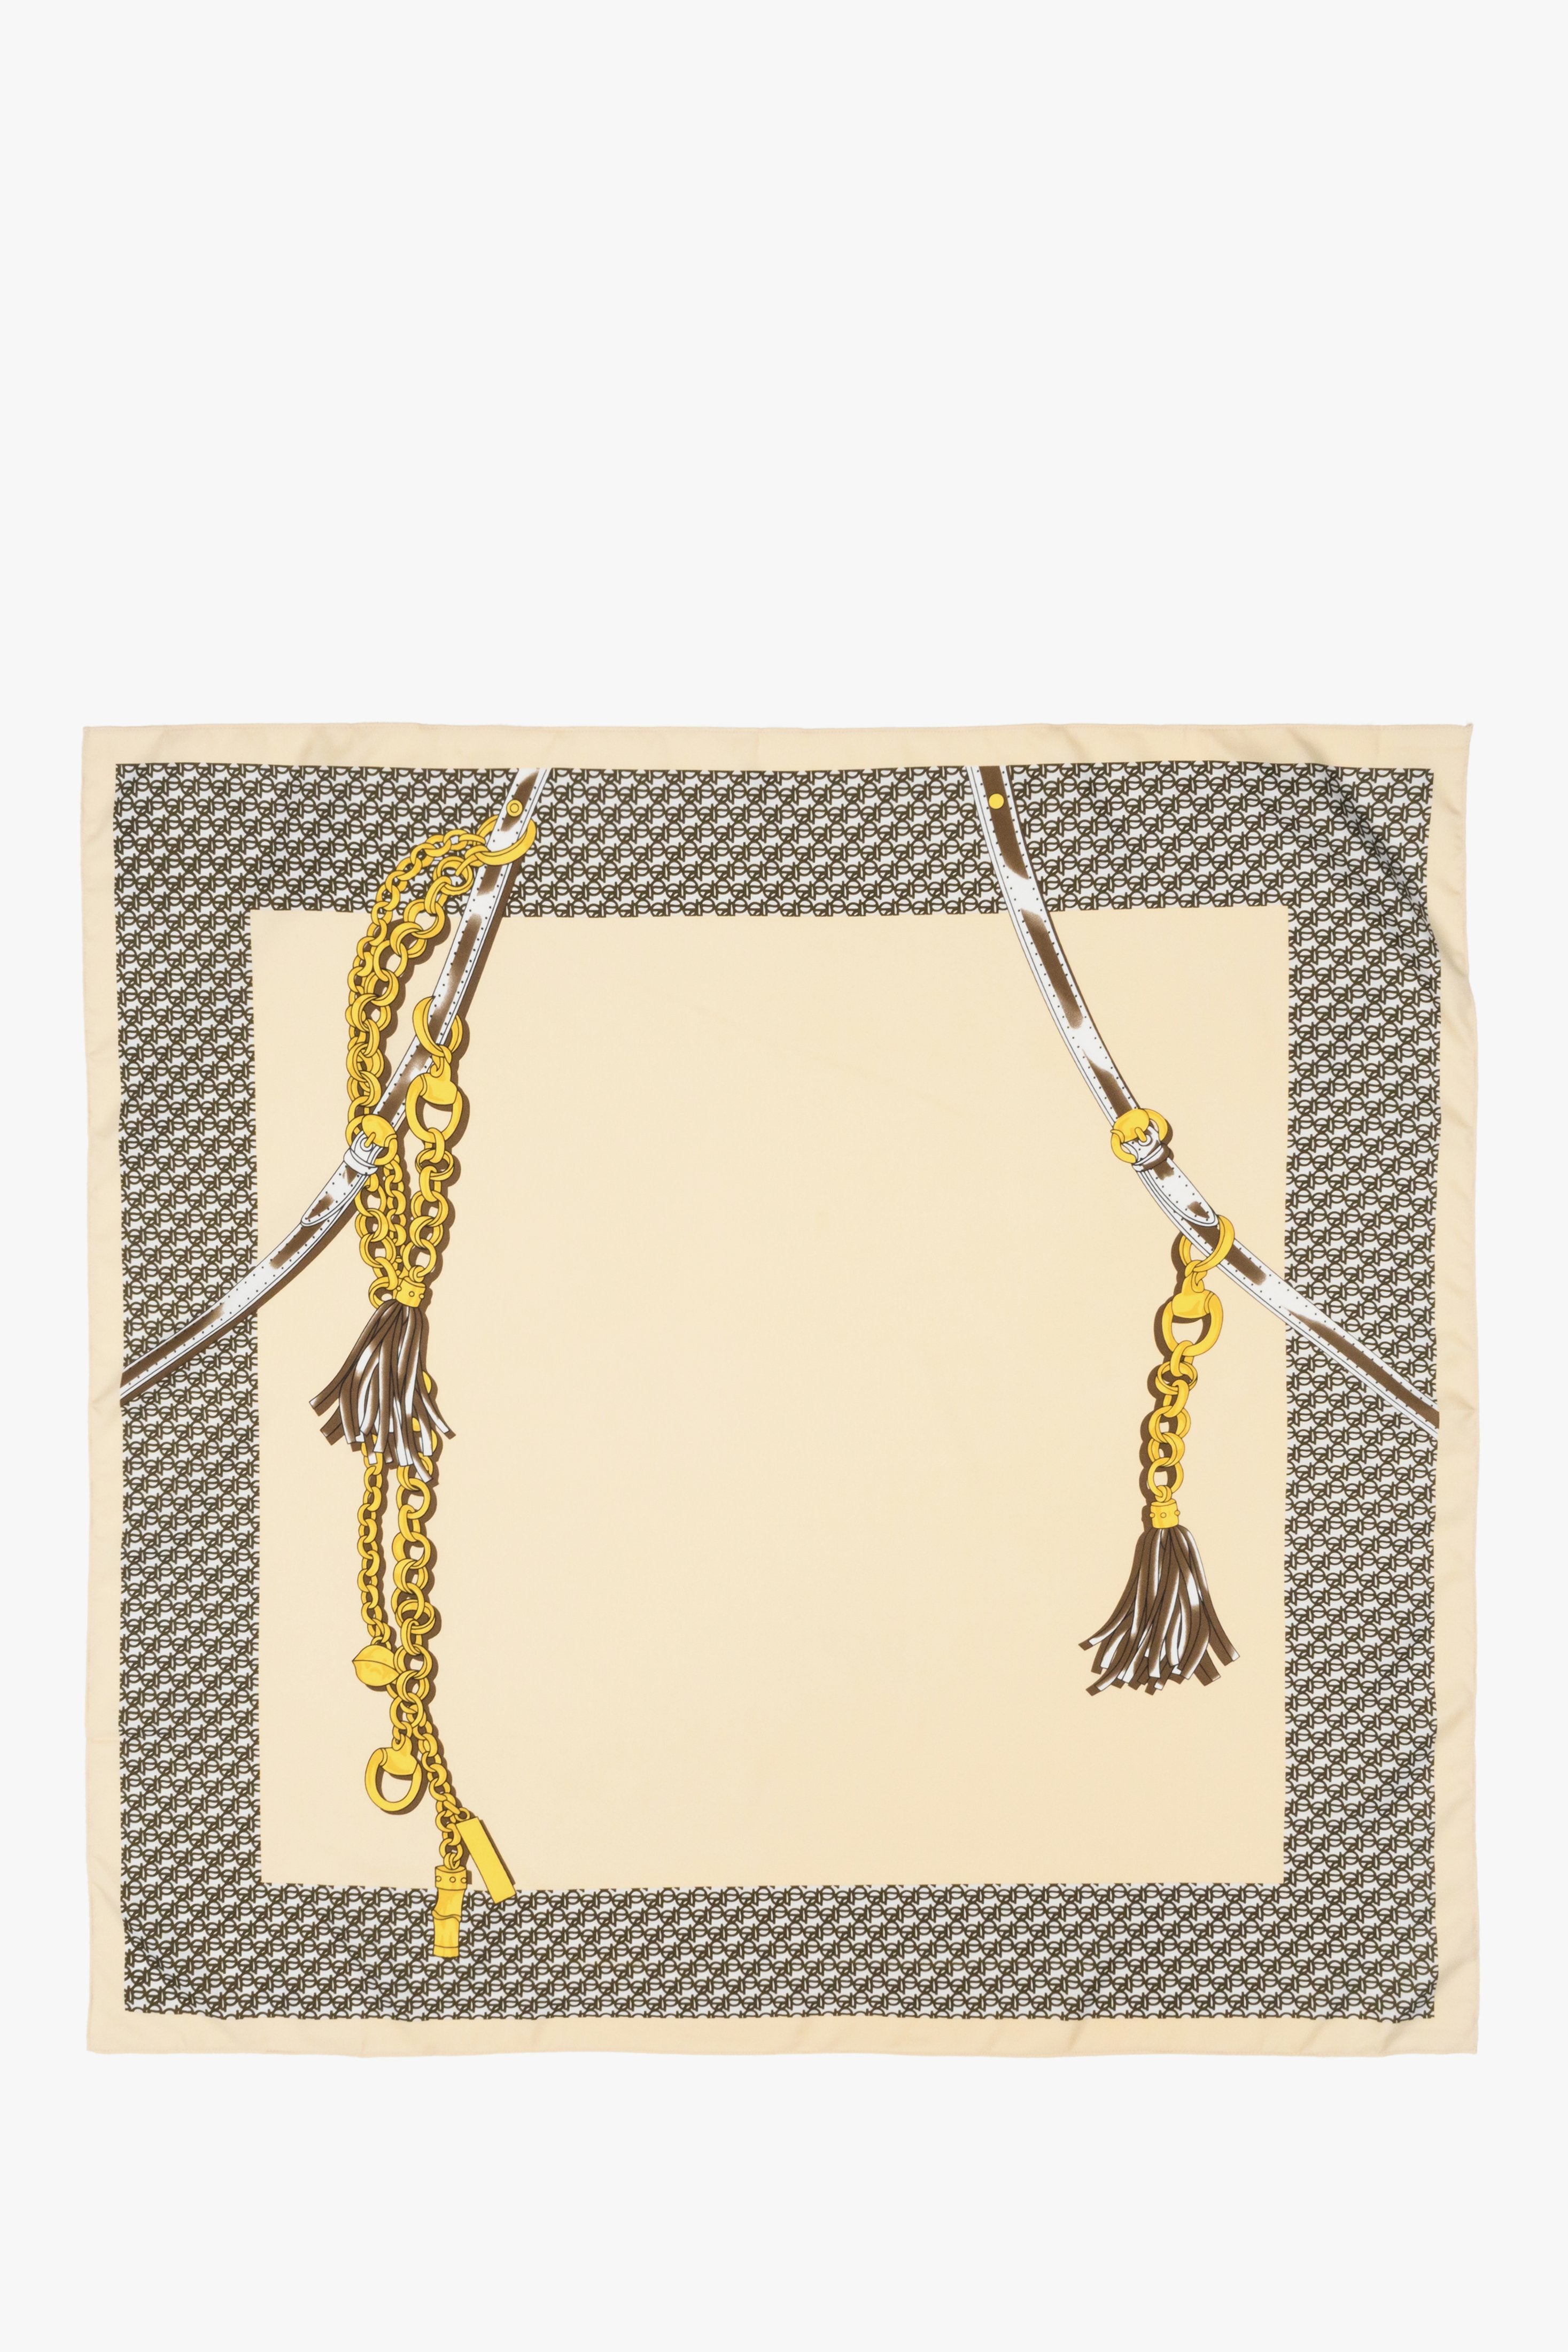 Women's beige-brown-gold neckerchief by Estro.